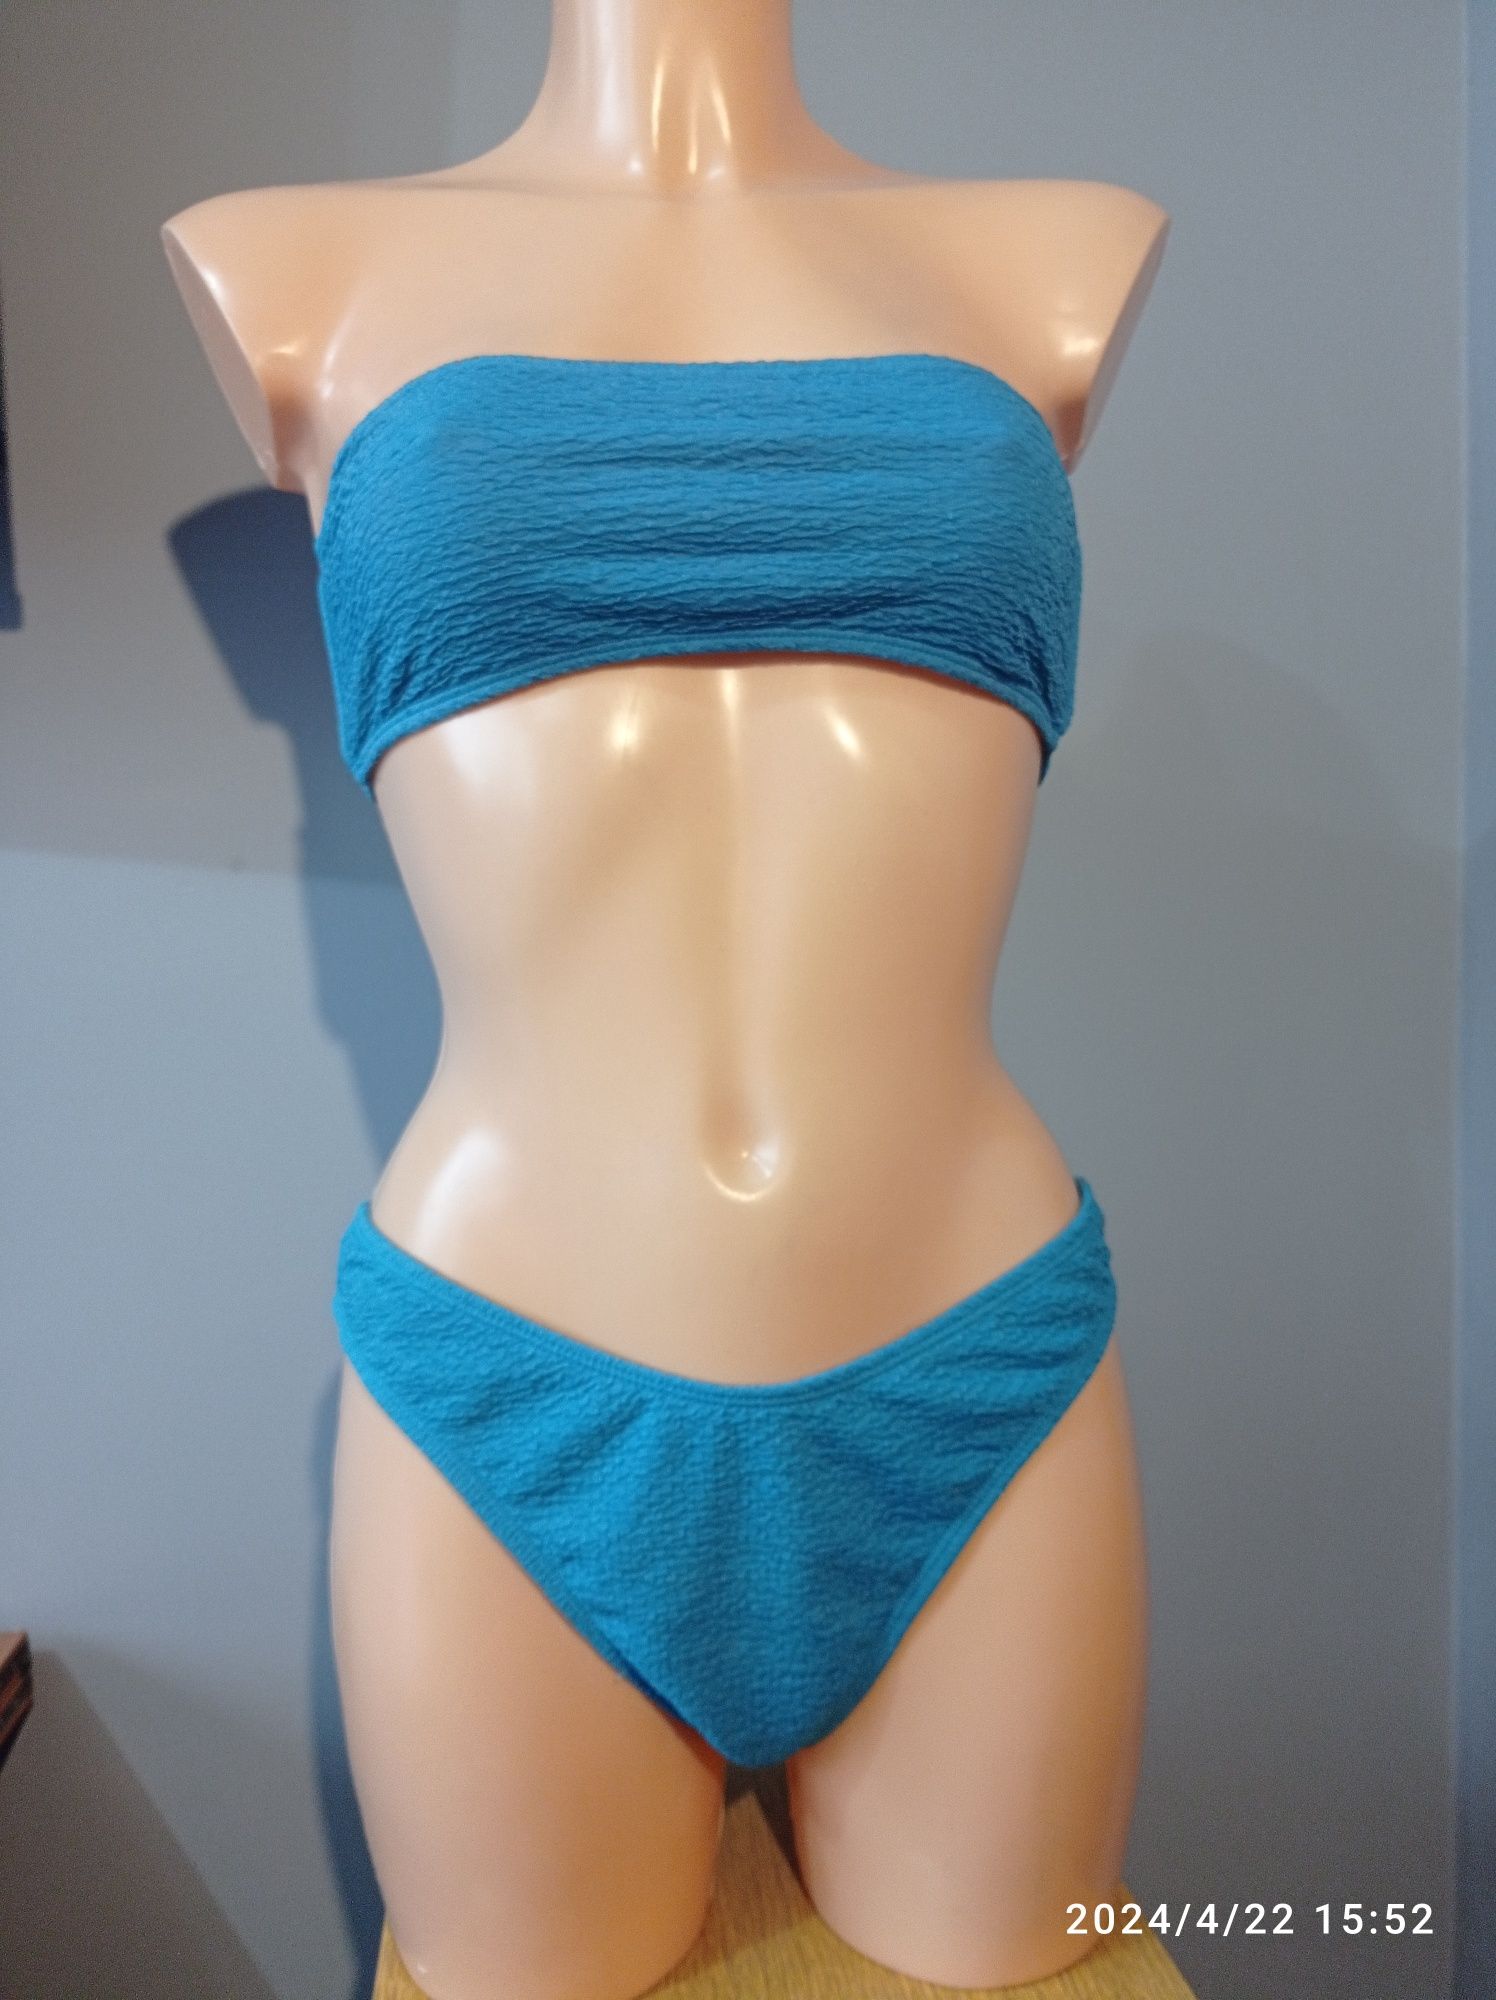 Bikini M L kostium strój kąpielowy lato plaża basen wytłaczany materia